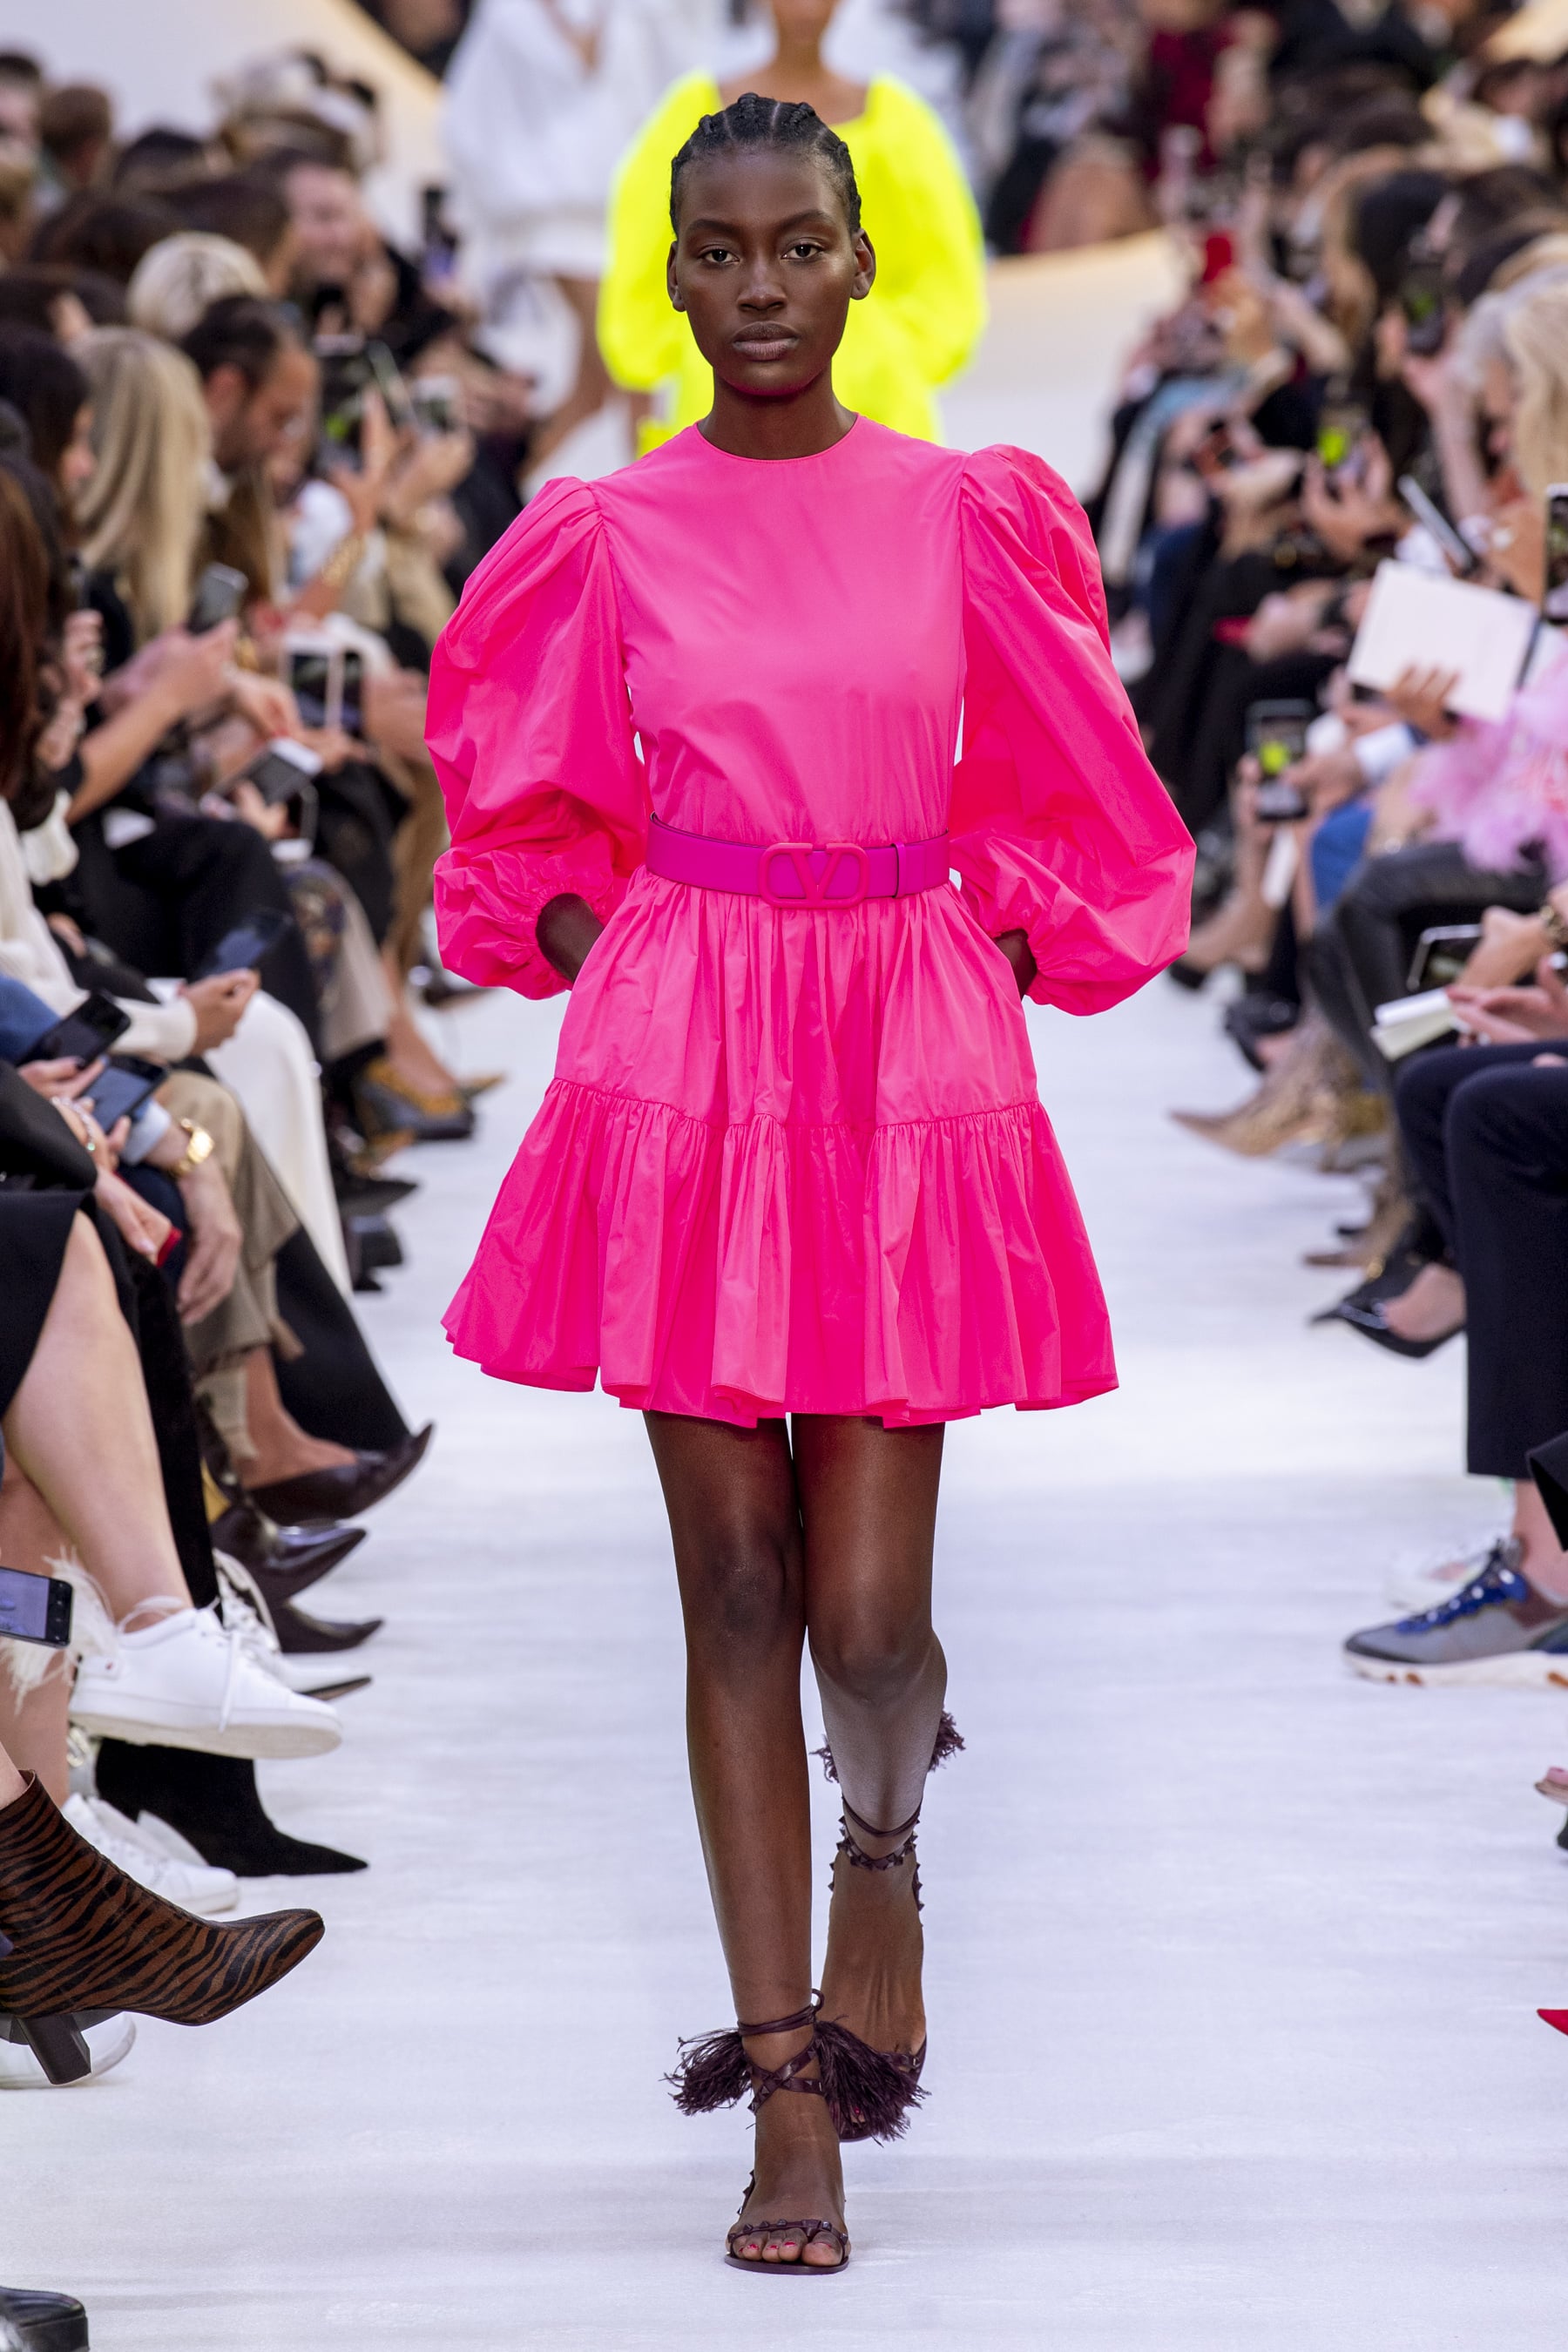 đầm hồng neon tay phồng - xu hướng thời trang xuân hè 2020